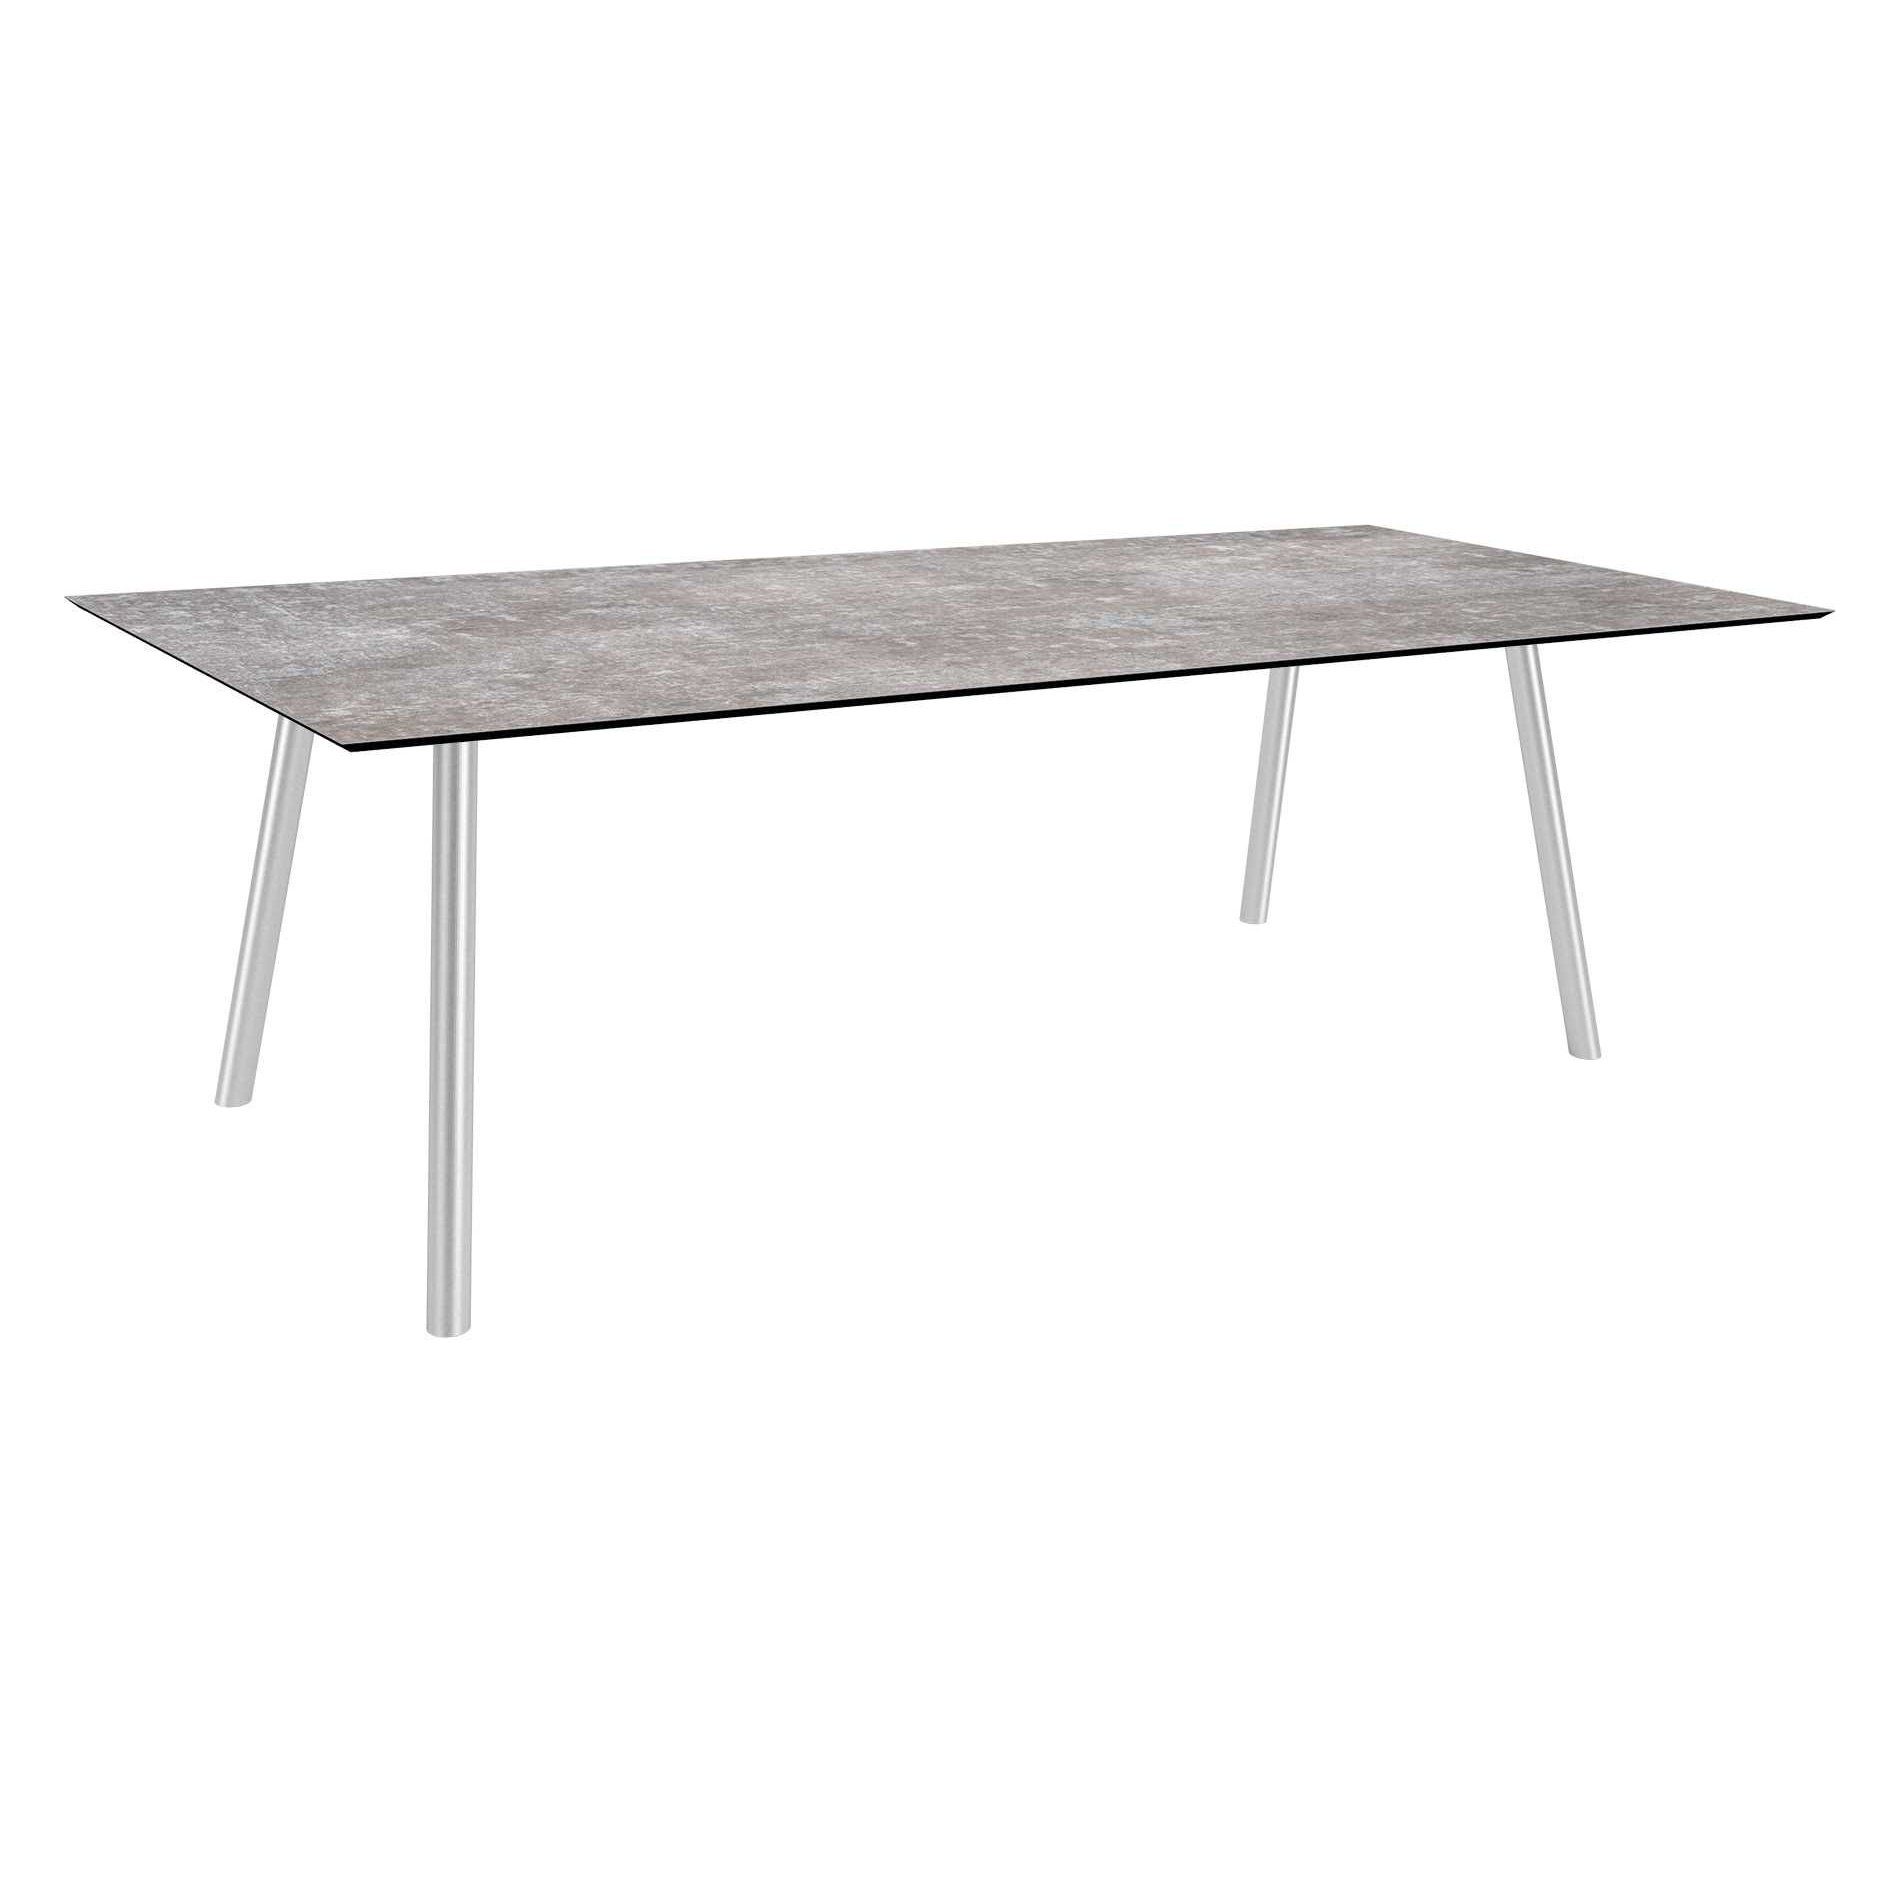 Stern Tisch "Interno", Größe 220x100cm, Edelstahl, Rundrohr, Tischplatte HPL Metallic Grau